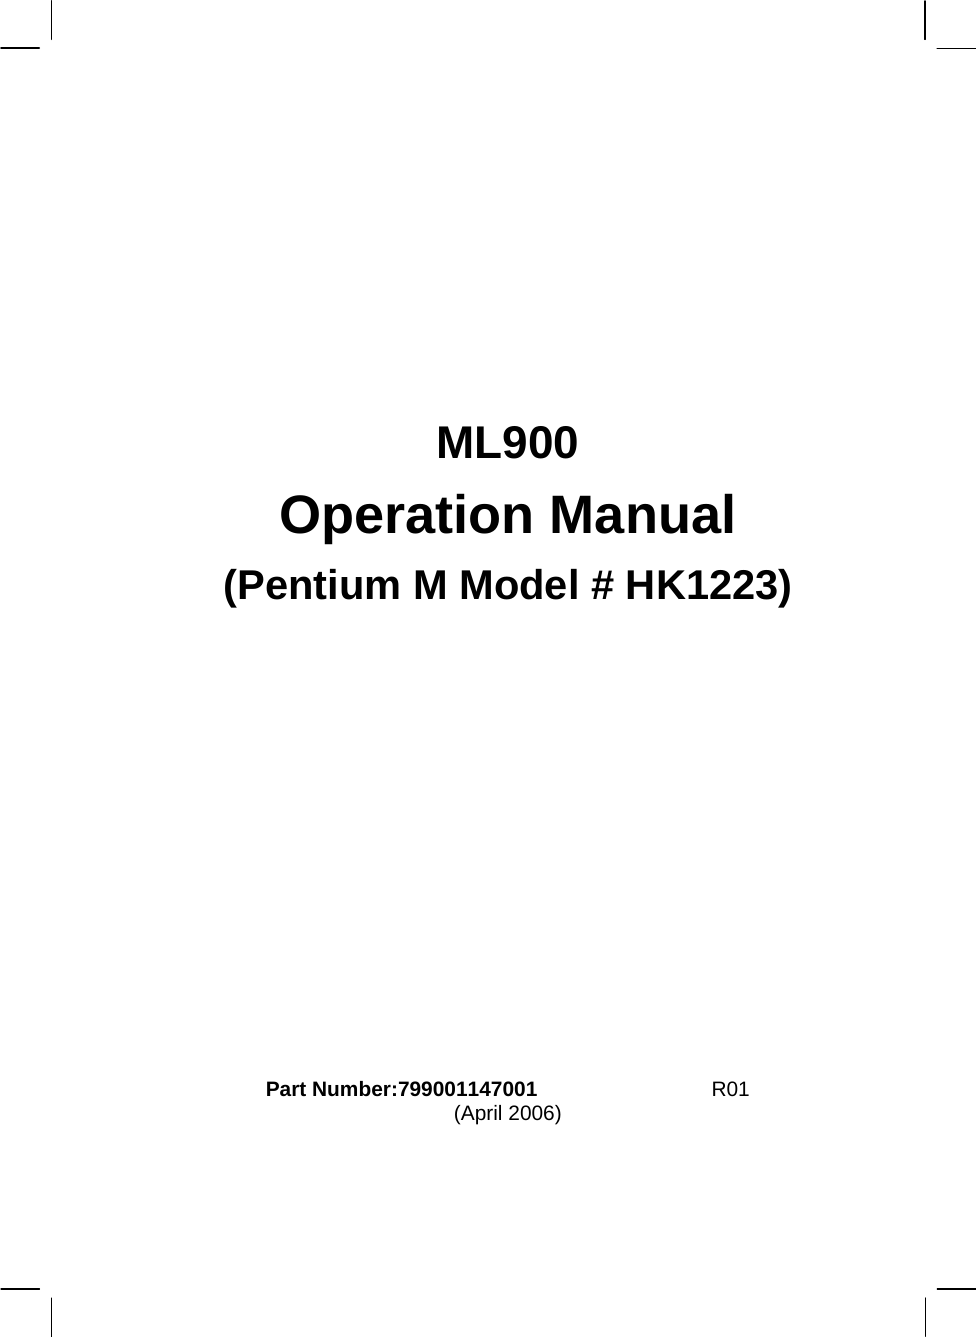         ML900 Operation Manual (Pentium M Model # HK1223)            Part Number:799001147001  7990 0114 3001  R01 (April 2006)    